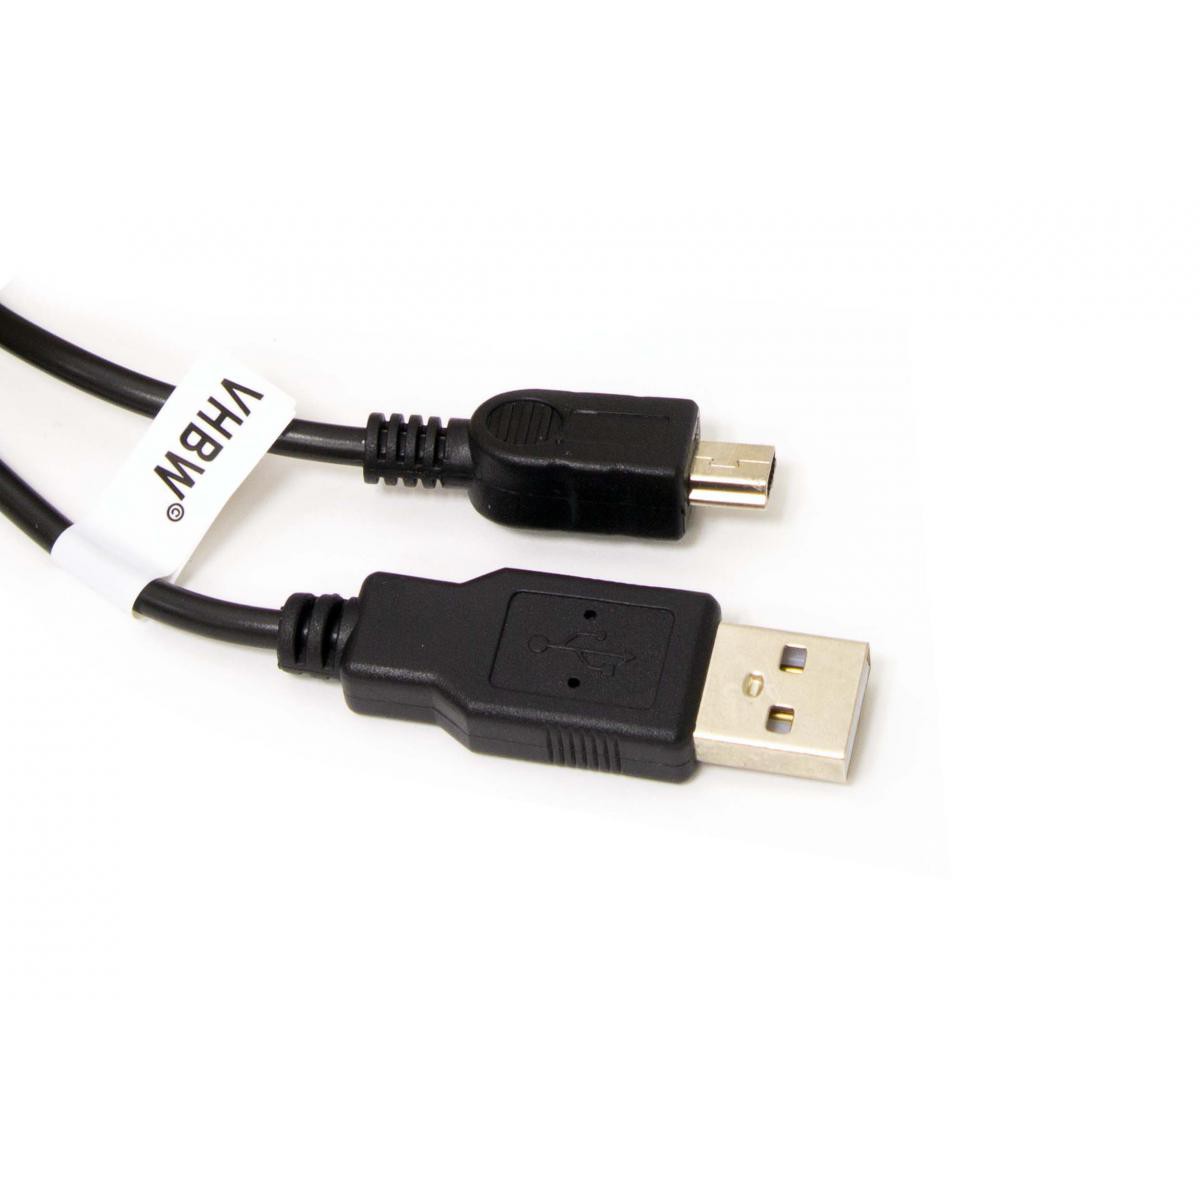 Vhbw - Câble USB A-Mini-B 5 pôles noir/black, longueur 1m, pour NIKON remplace UC-E4, UC-E5 - Câble antenne